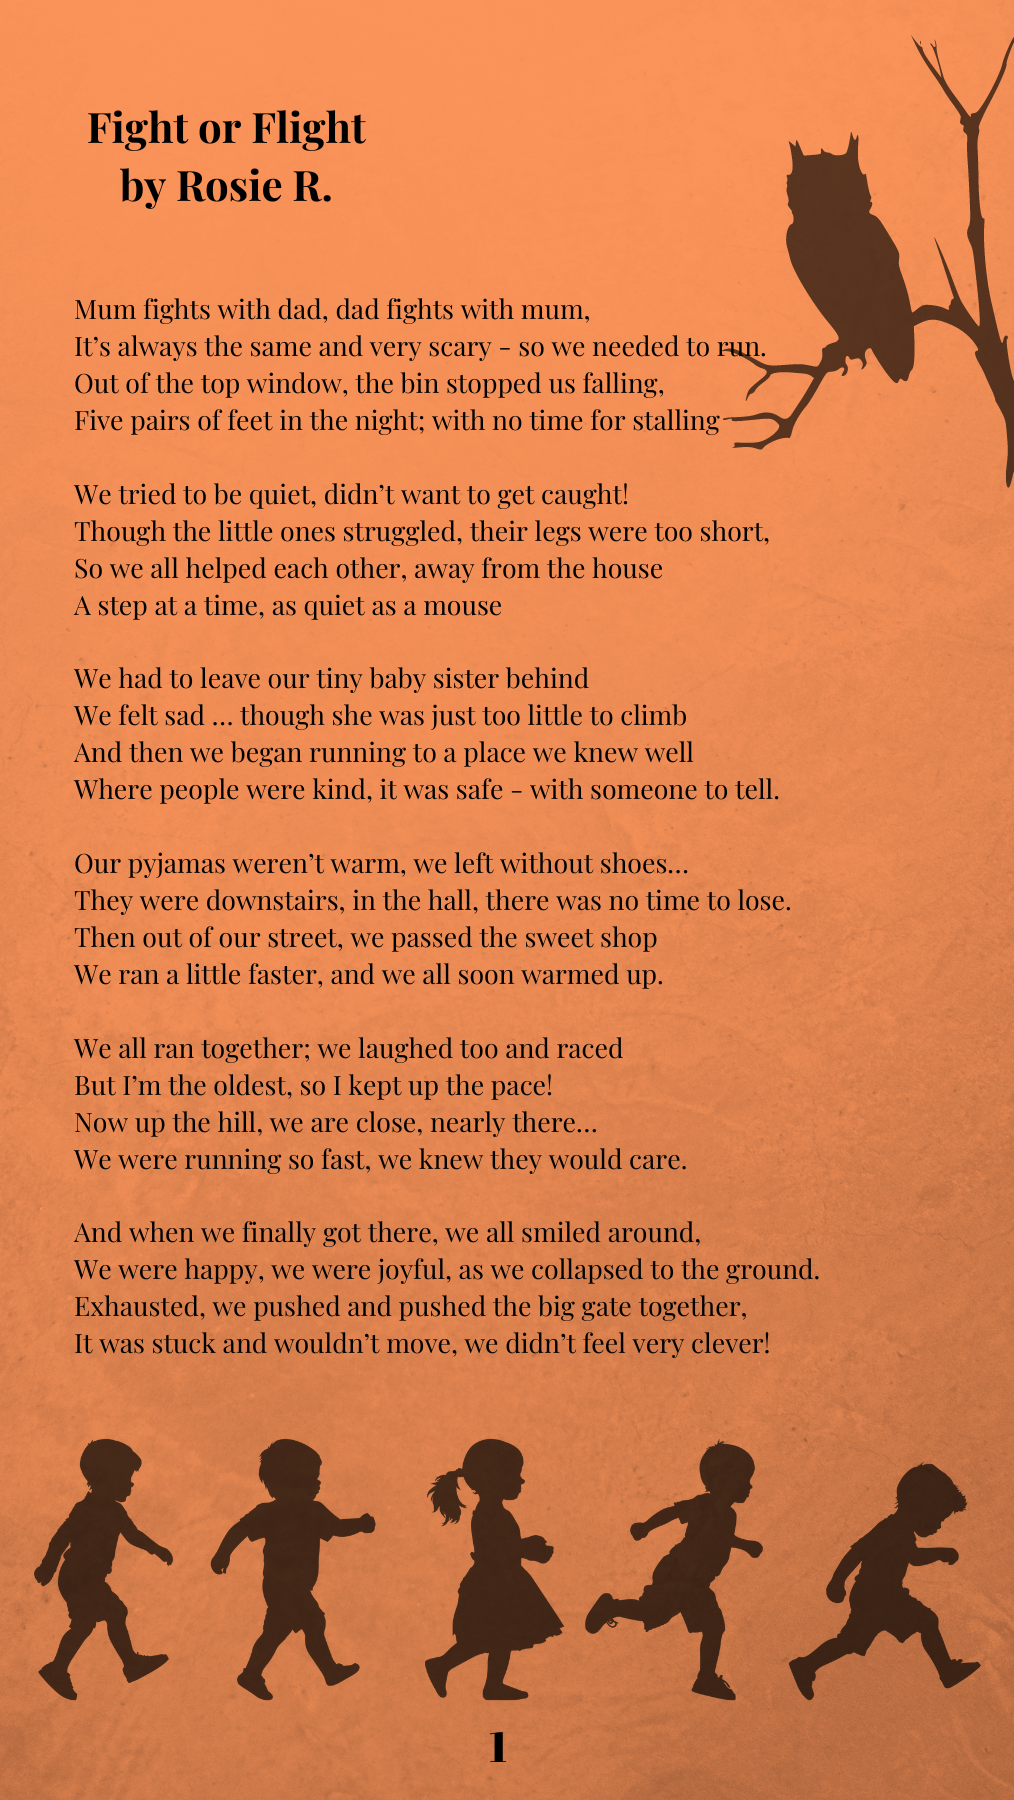 Poem by Rosie R